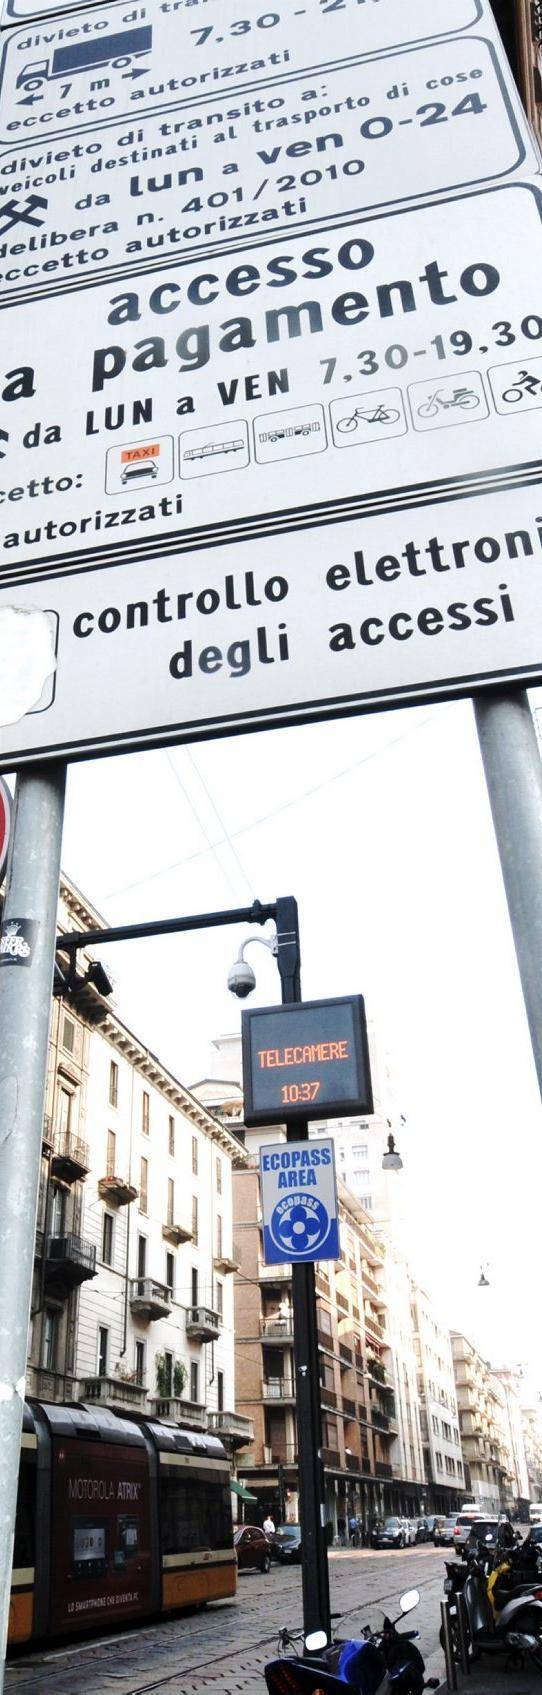 Da lunedì stop a tutte le auto, Milano si ferma per tre giorni